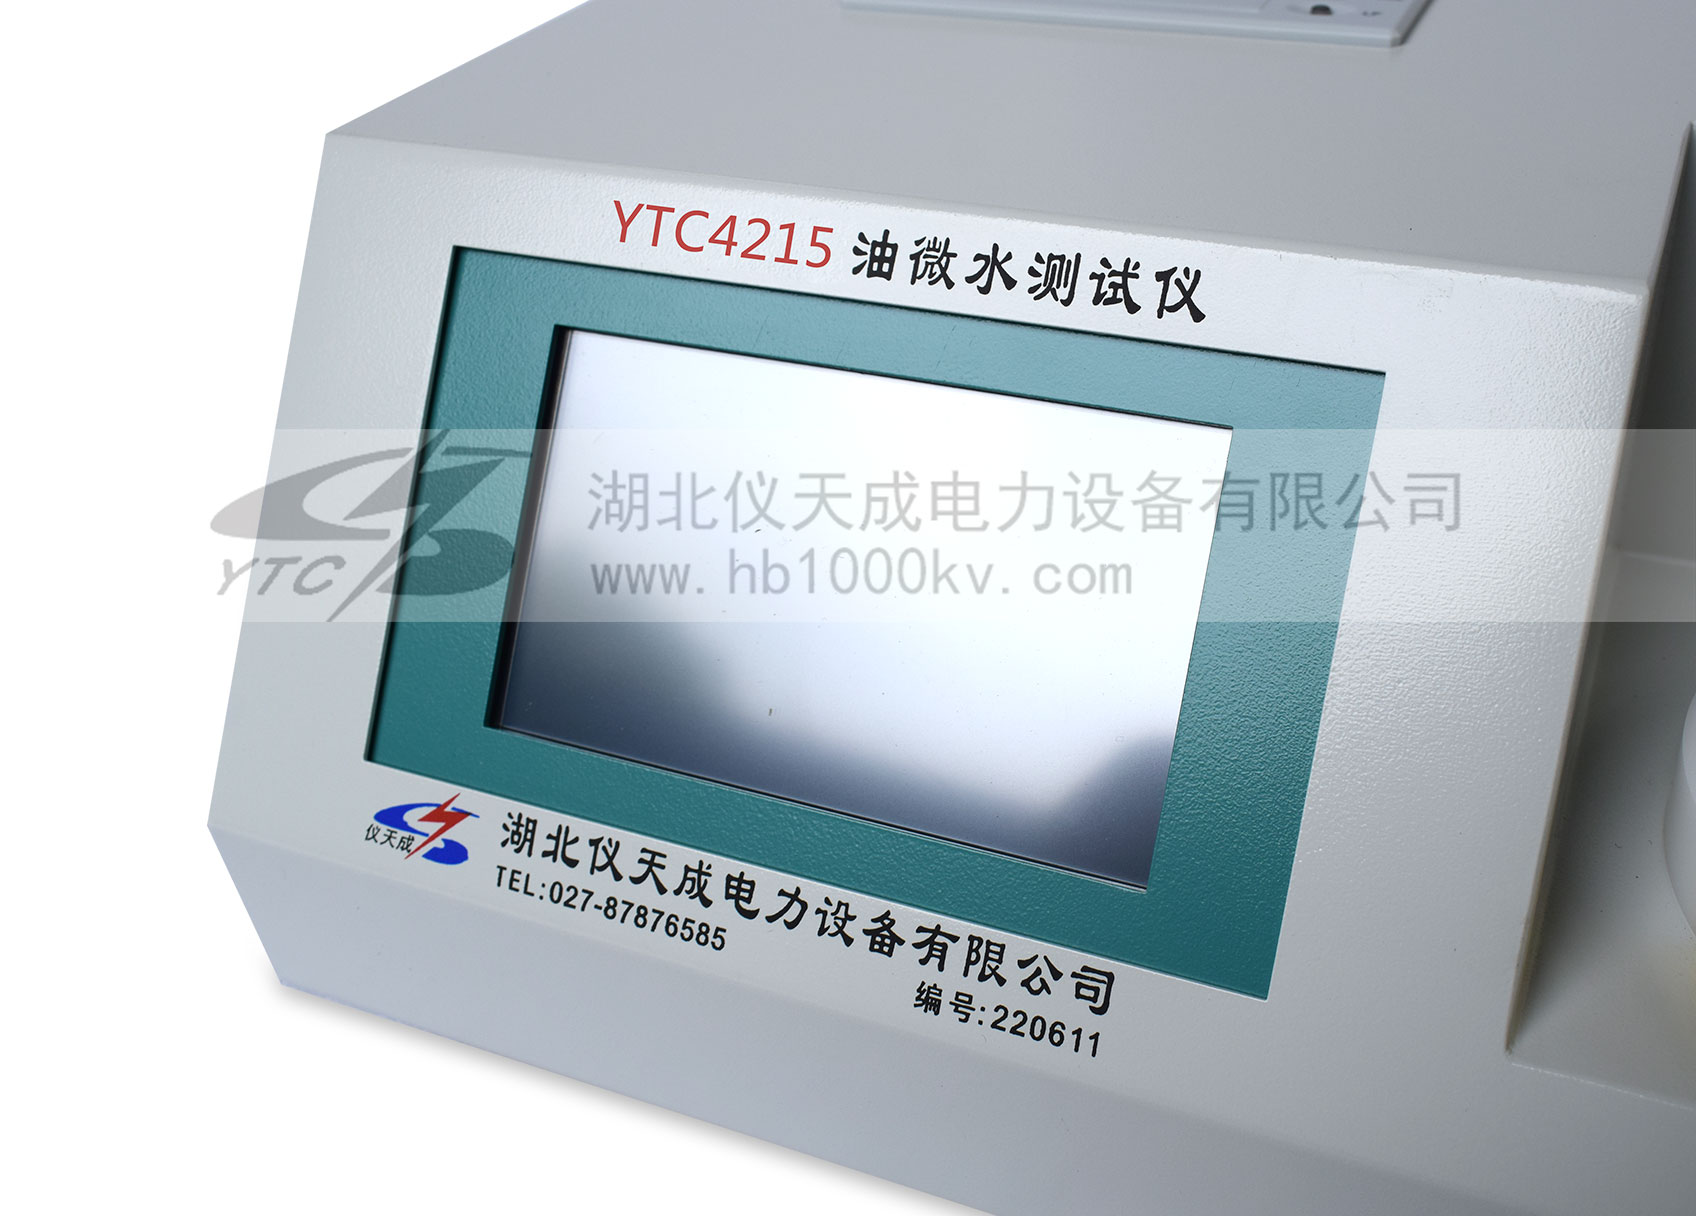 YTC4215微量水分測定儀主機細節